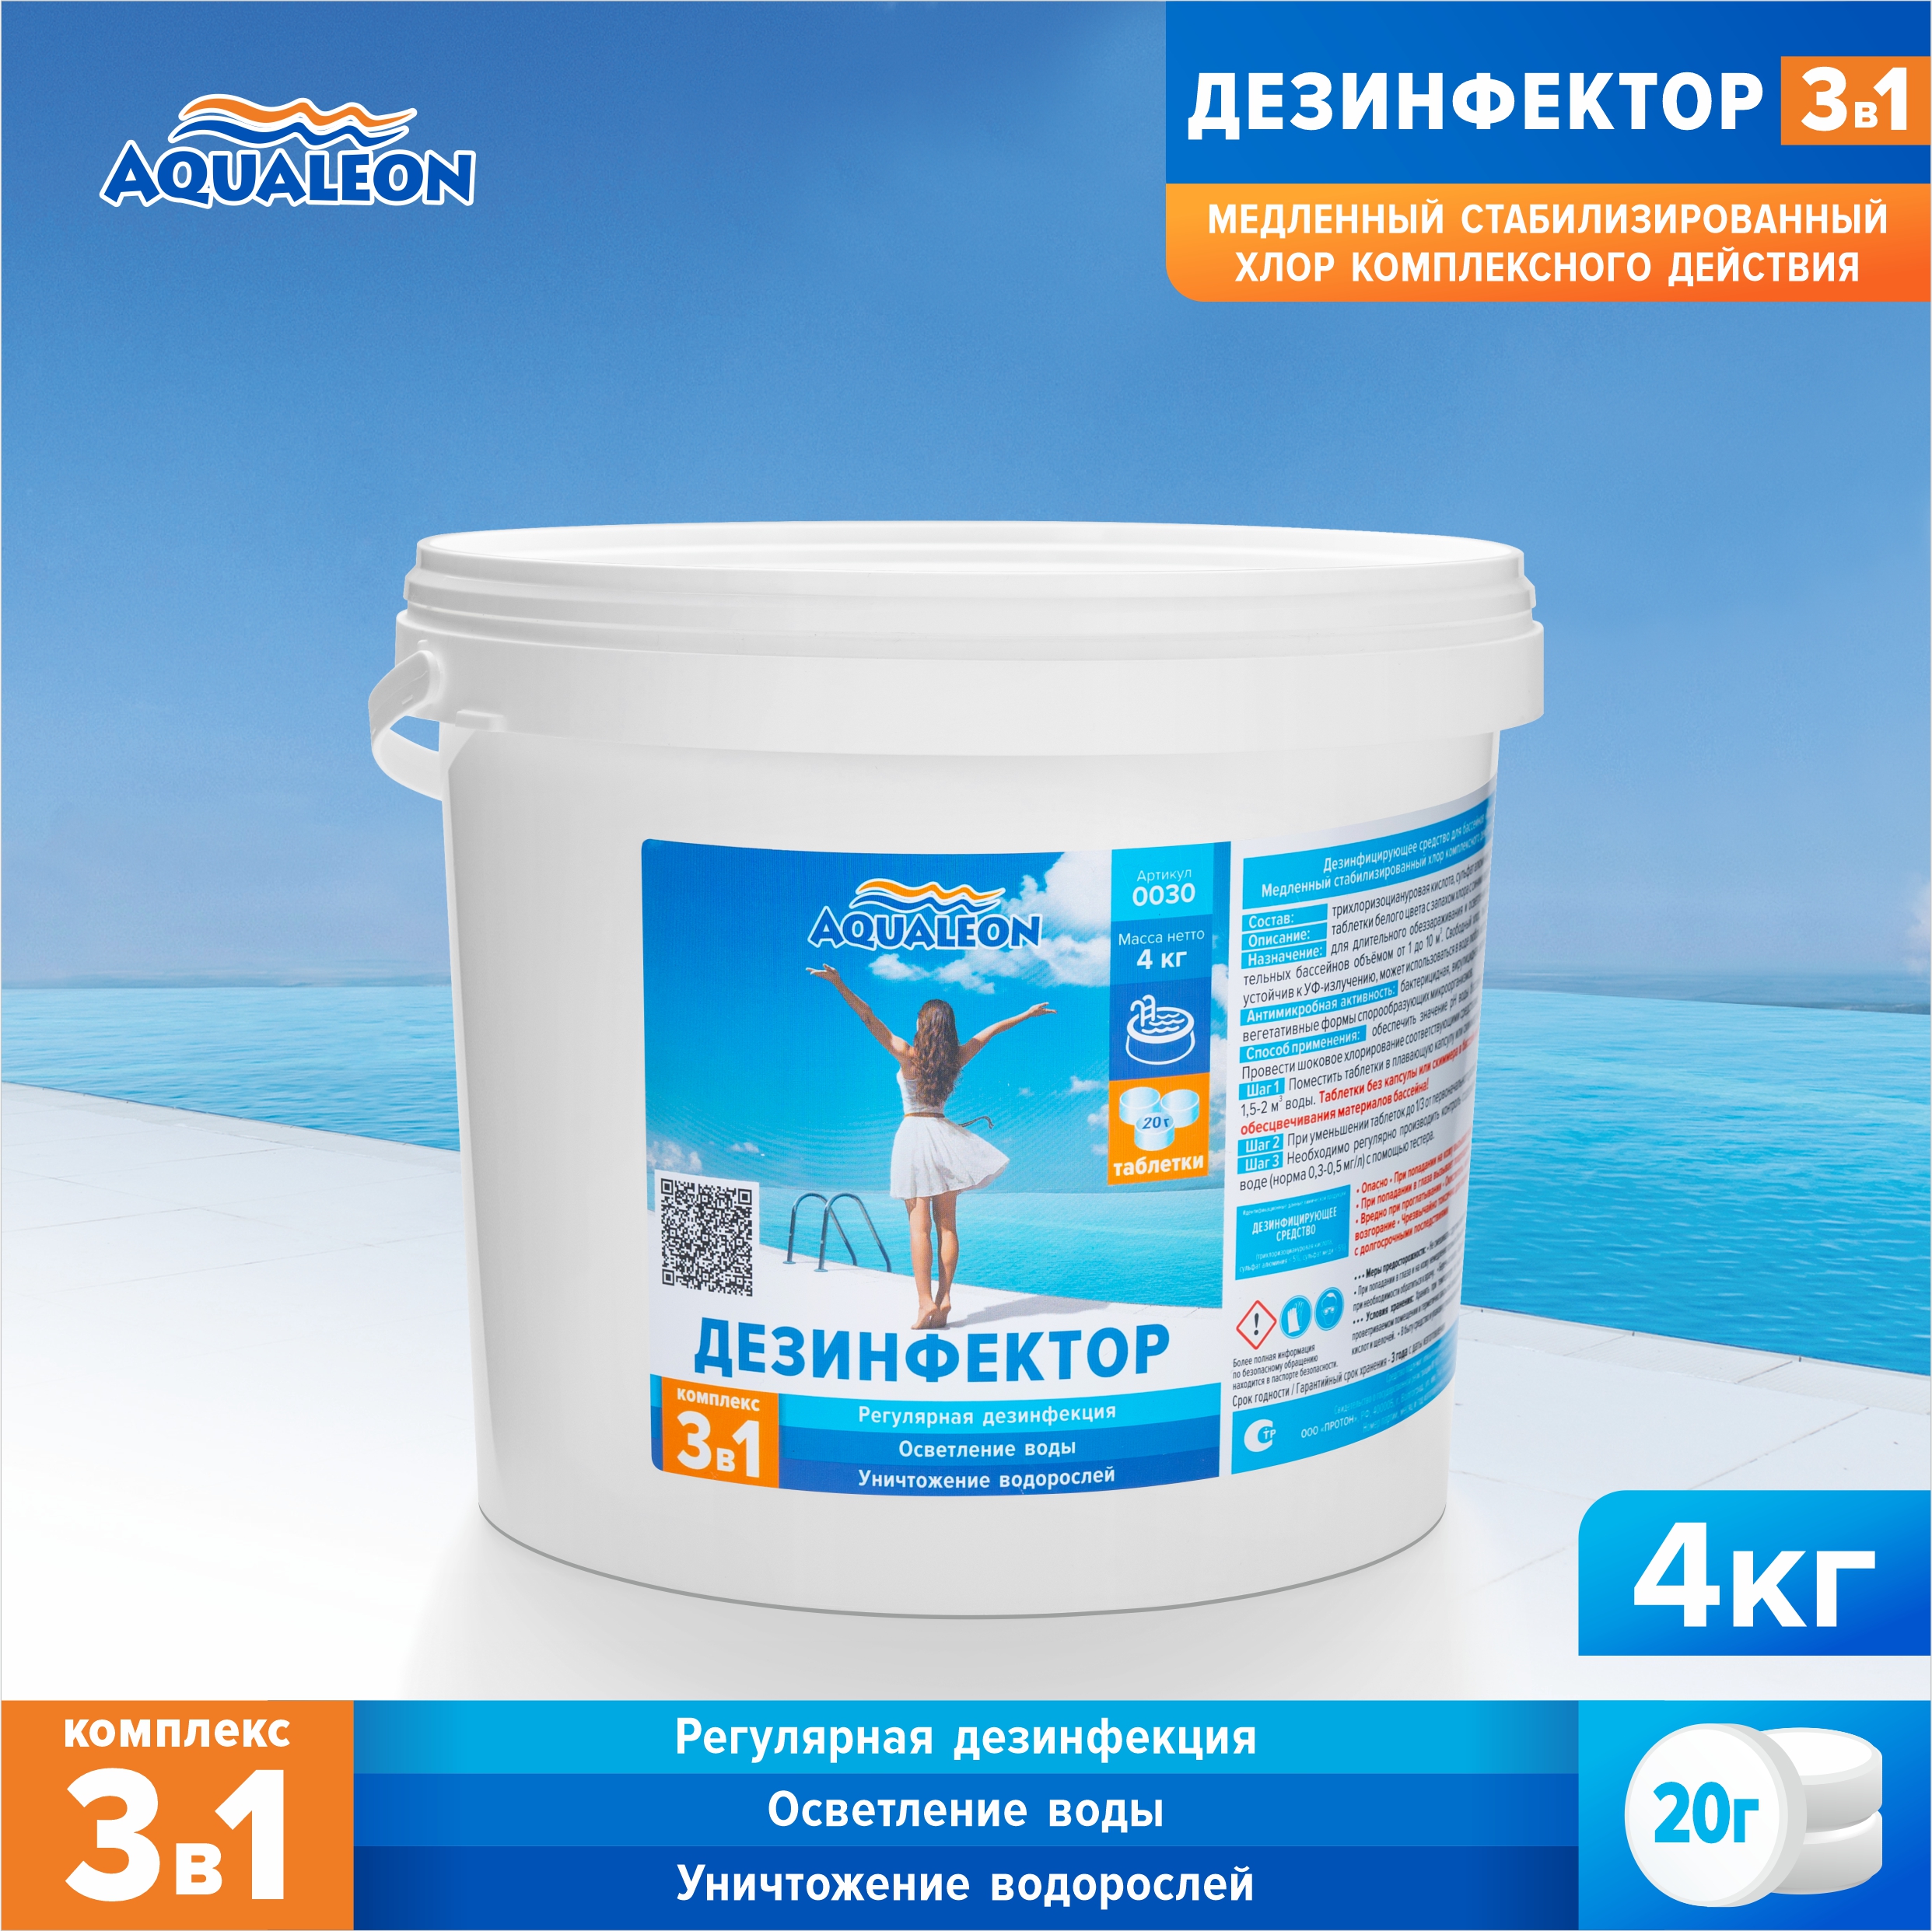 Медленный хлор для бассейна (МСХ КД) Aqualeon комплексный таблетки по 20 гр. 4 кг